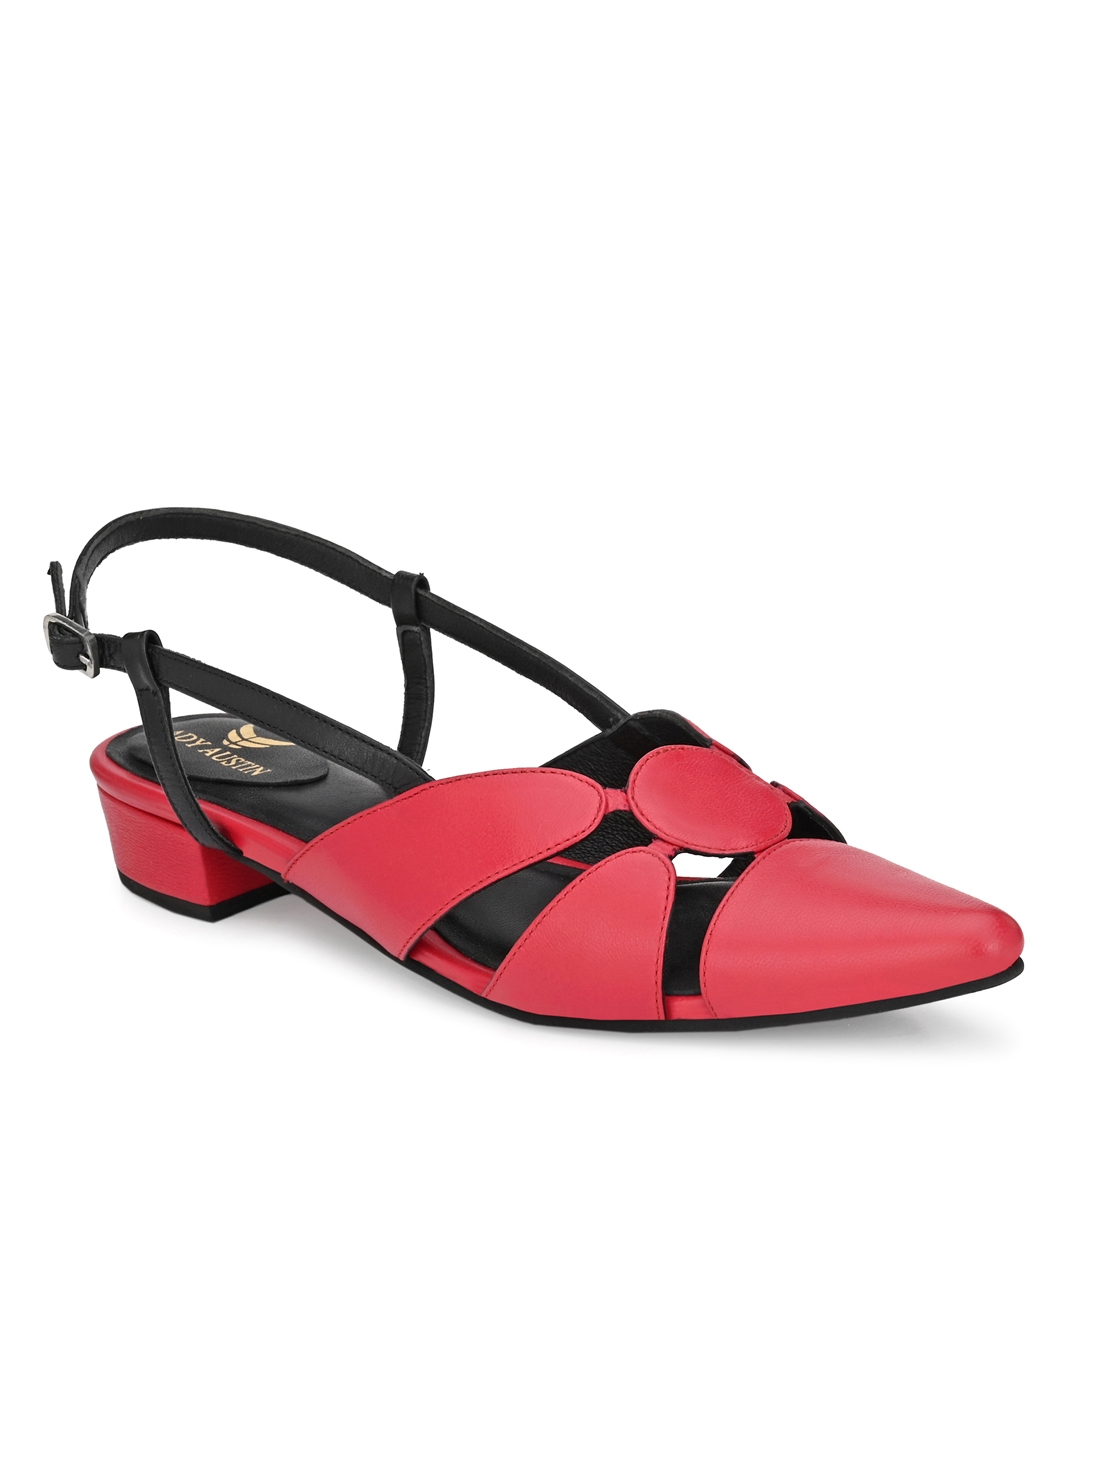 AADY AUSTIN | Aady Austin Women's Trendy Red Pointed Toe Block Heel